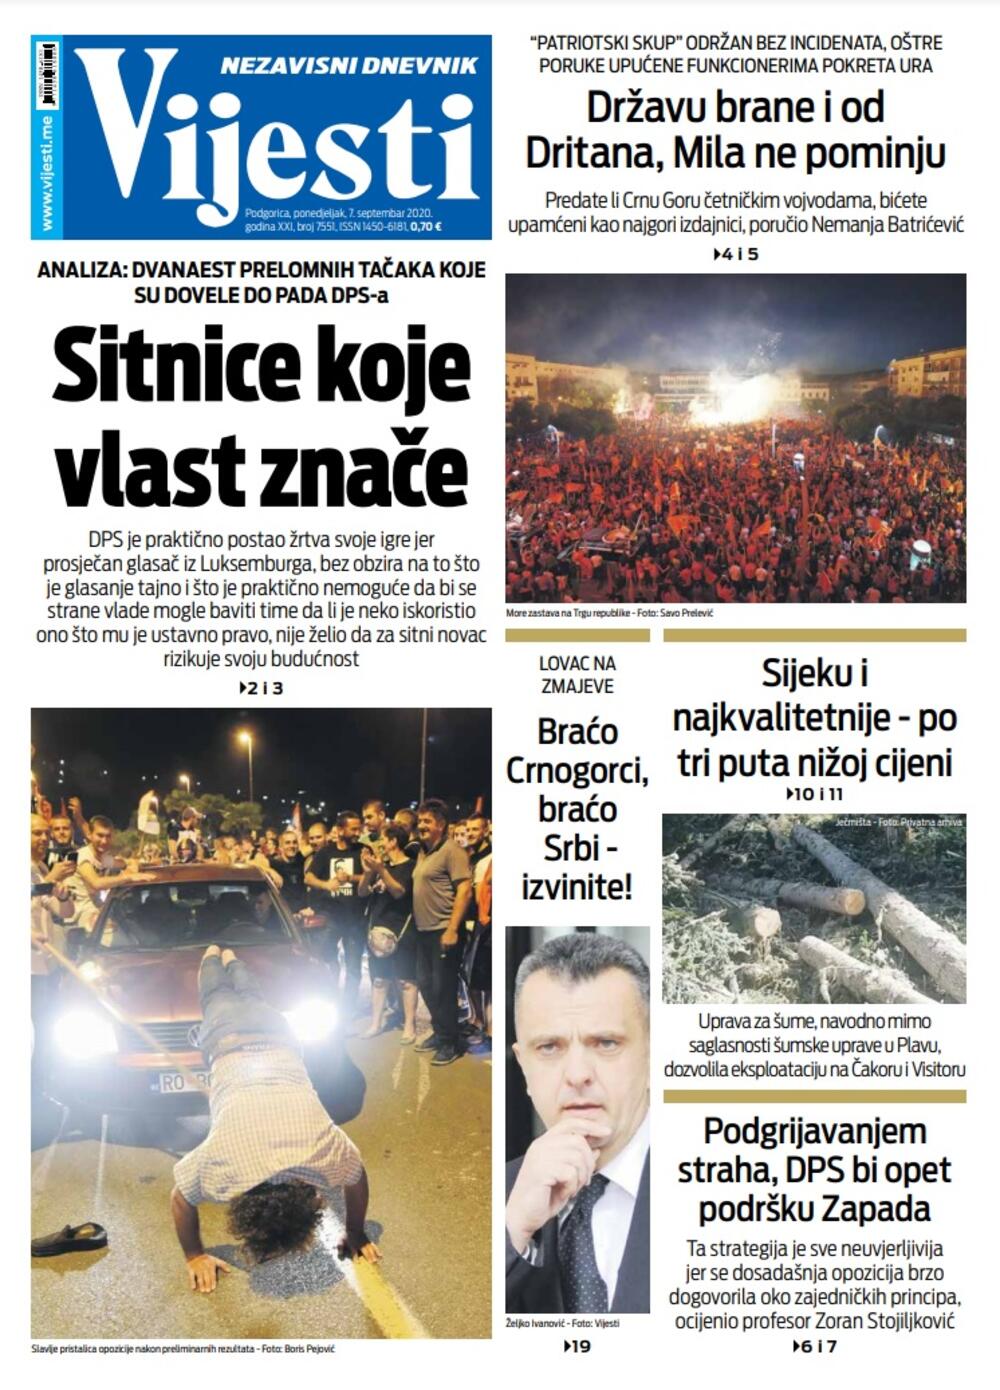 Naslovna strana "Vijesti" za 7. septembar 2020., Foto: Vijesti